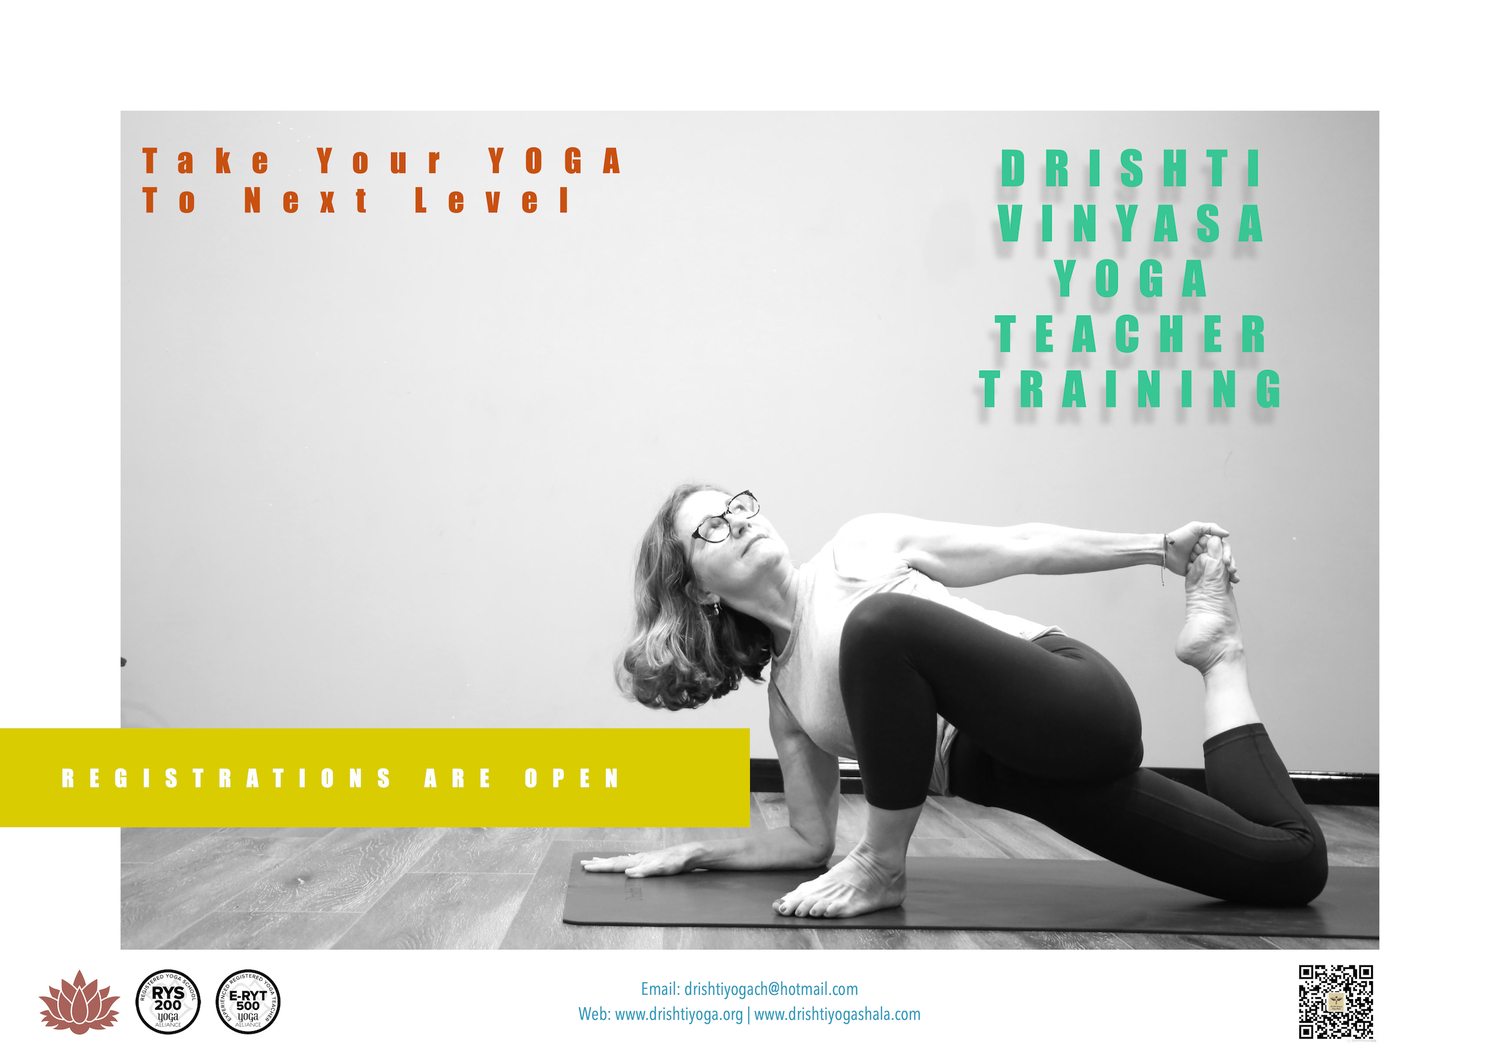 Drishti Vinyasa Yoga Teacher Training - Aug-Nov 2020 - Shanghai, China 2 copy-p1.jpg